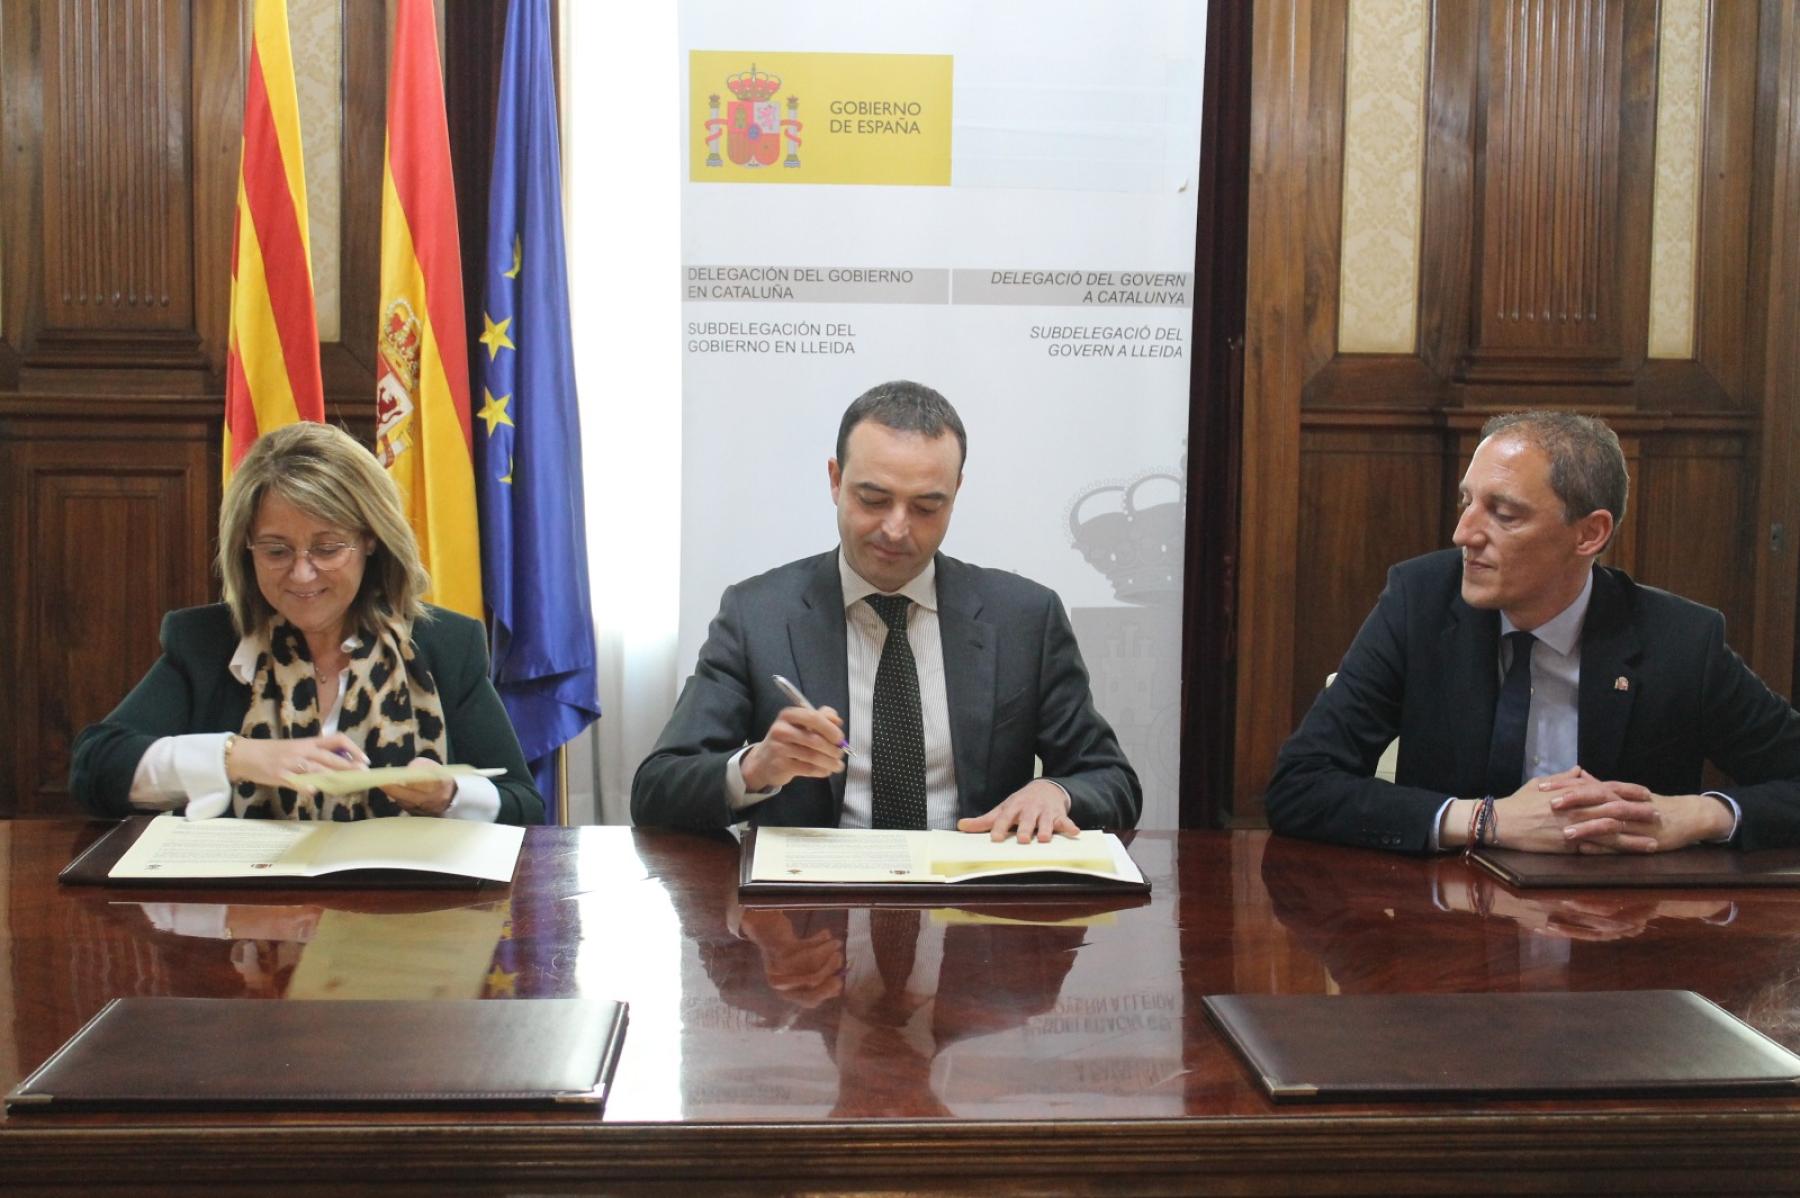 Política Territorial asigna 2,5 millones de euros para impulsar la transformación digital de las entidades locales en Lleida